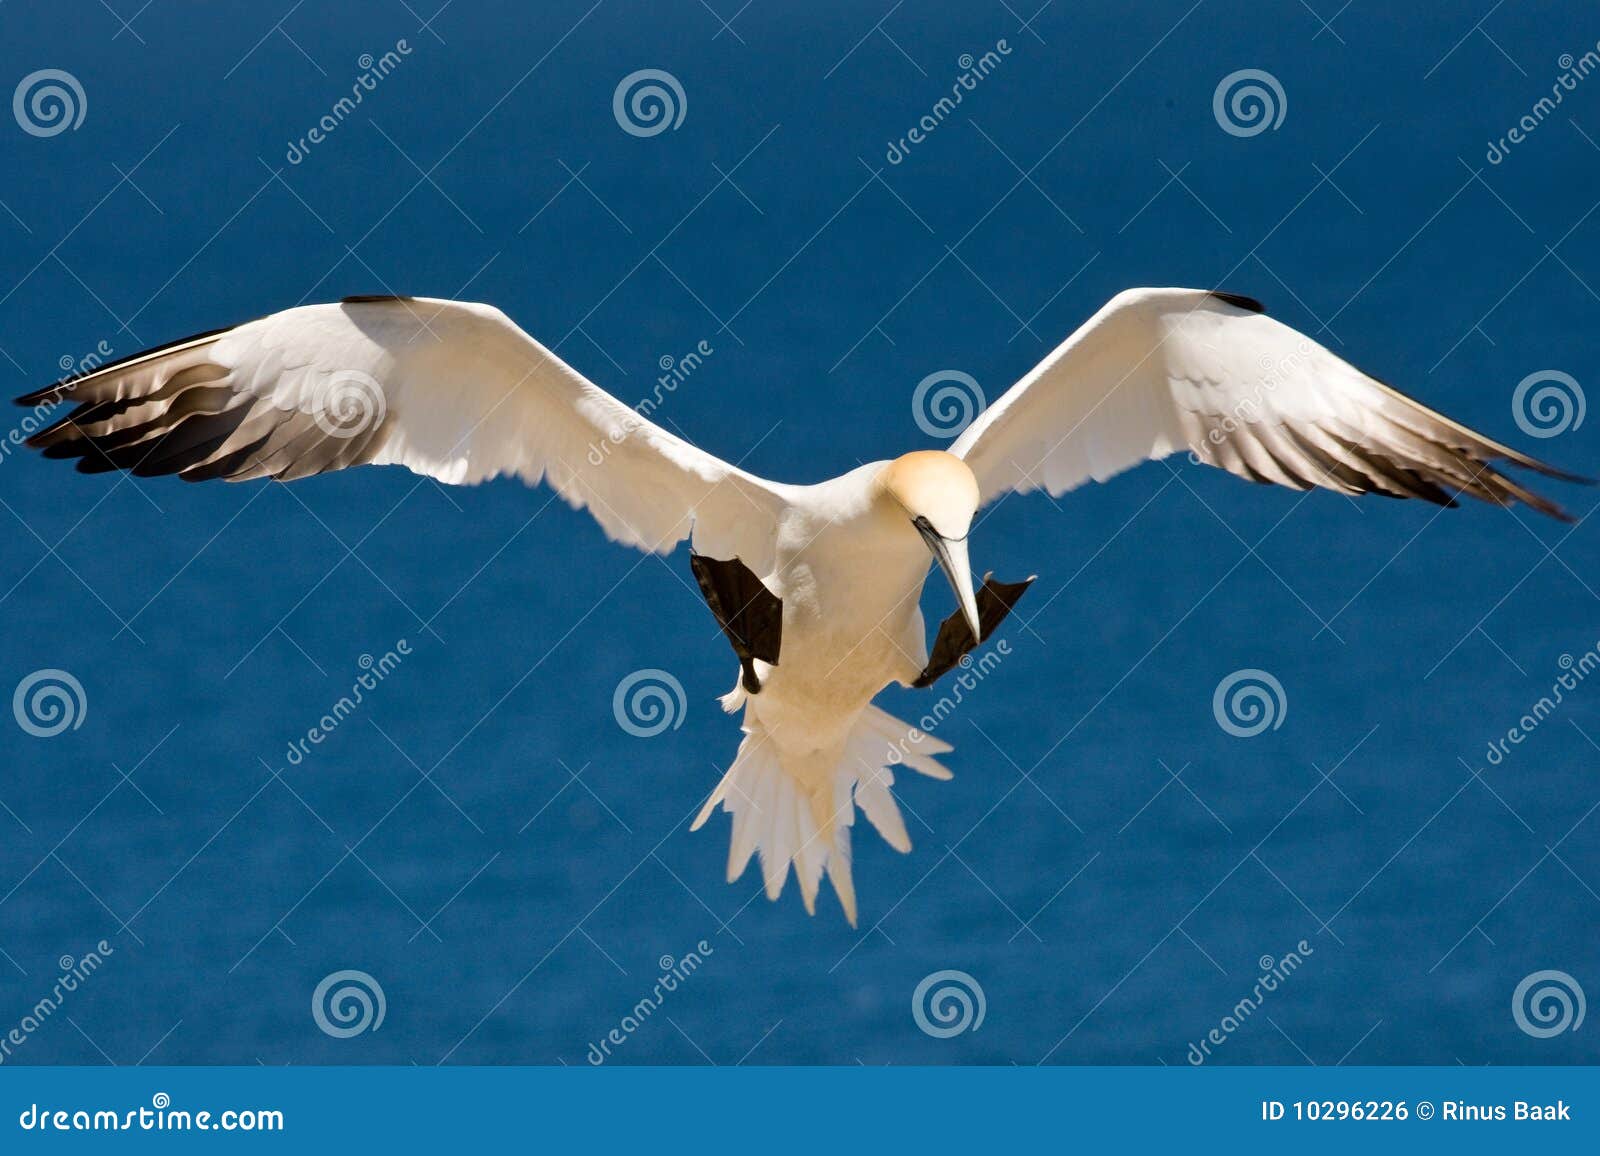 norhern gannet